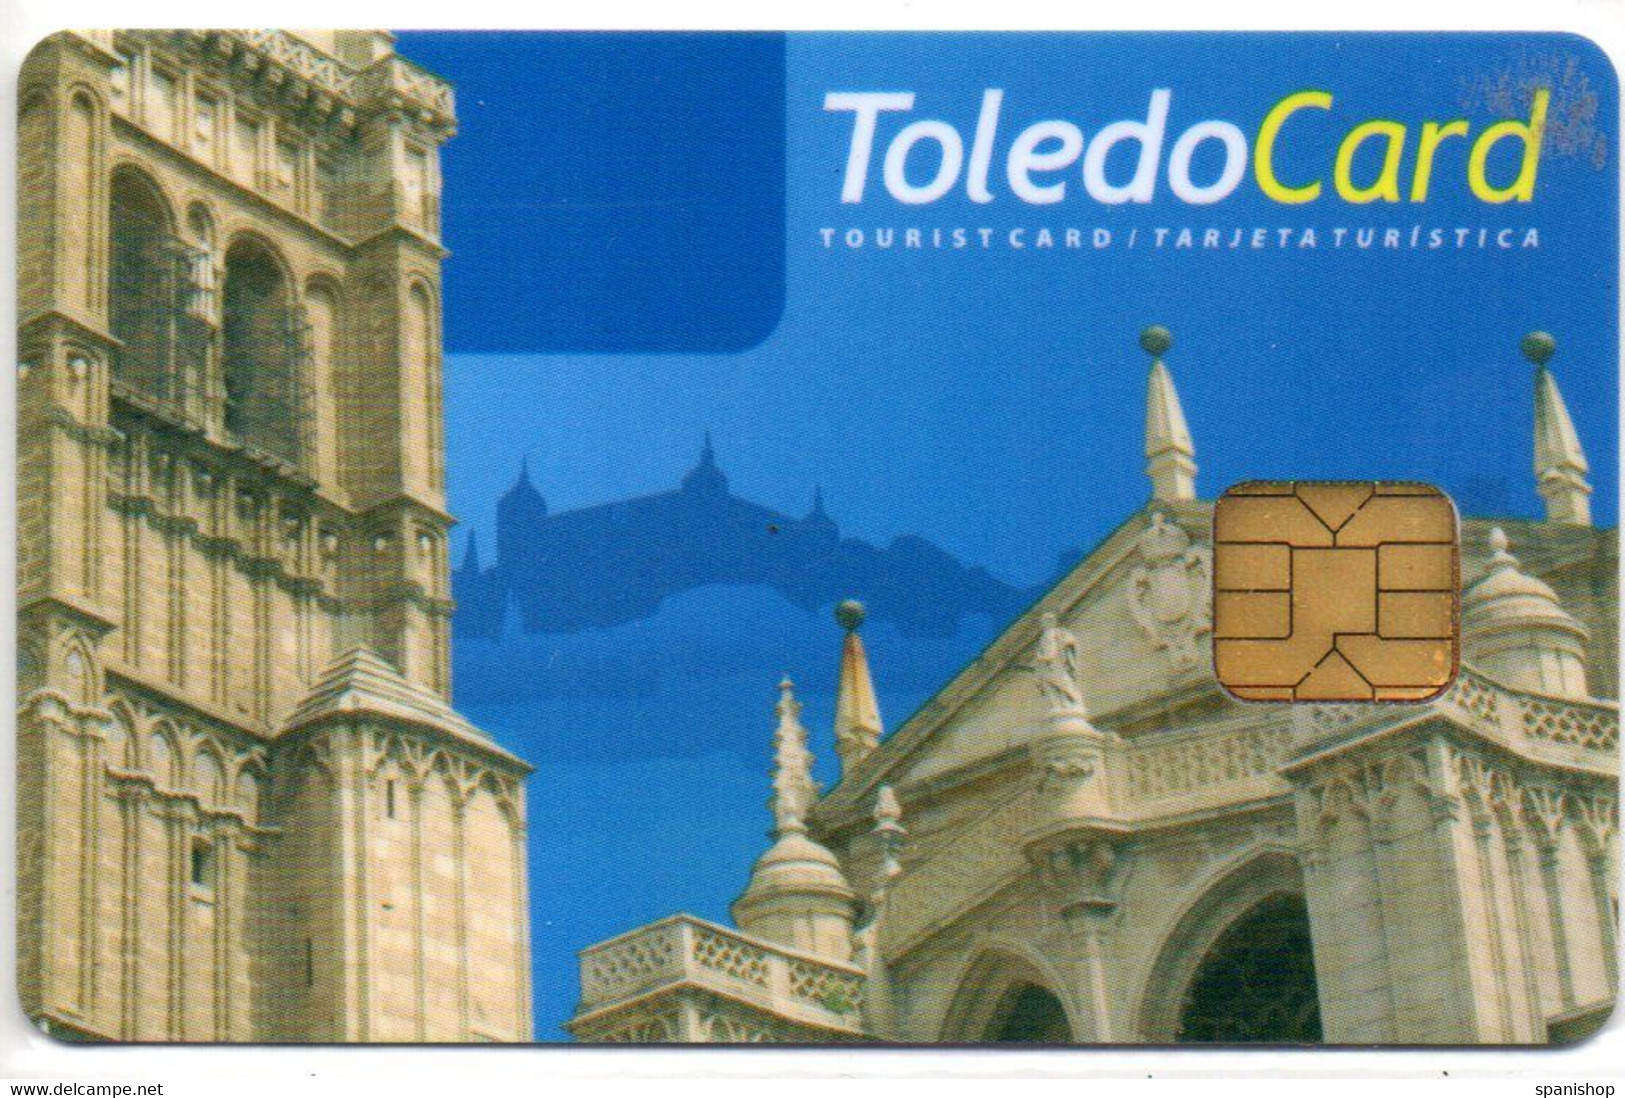 Toledo - Spain Tourist Tourism Card Tarjeta Turística - Matériel Et Accessoires